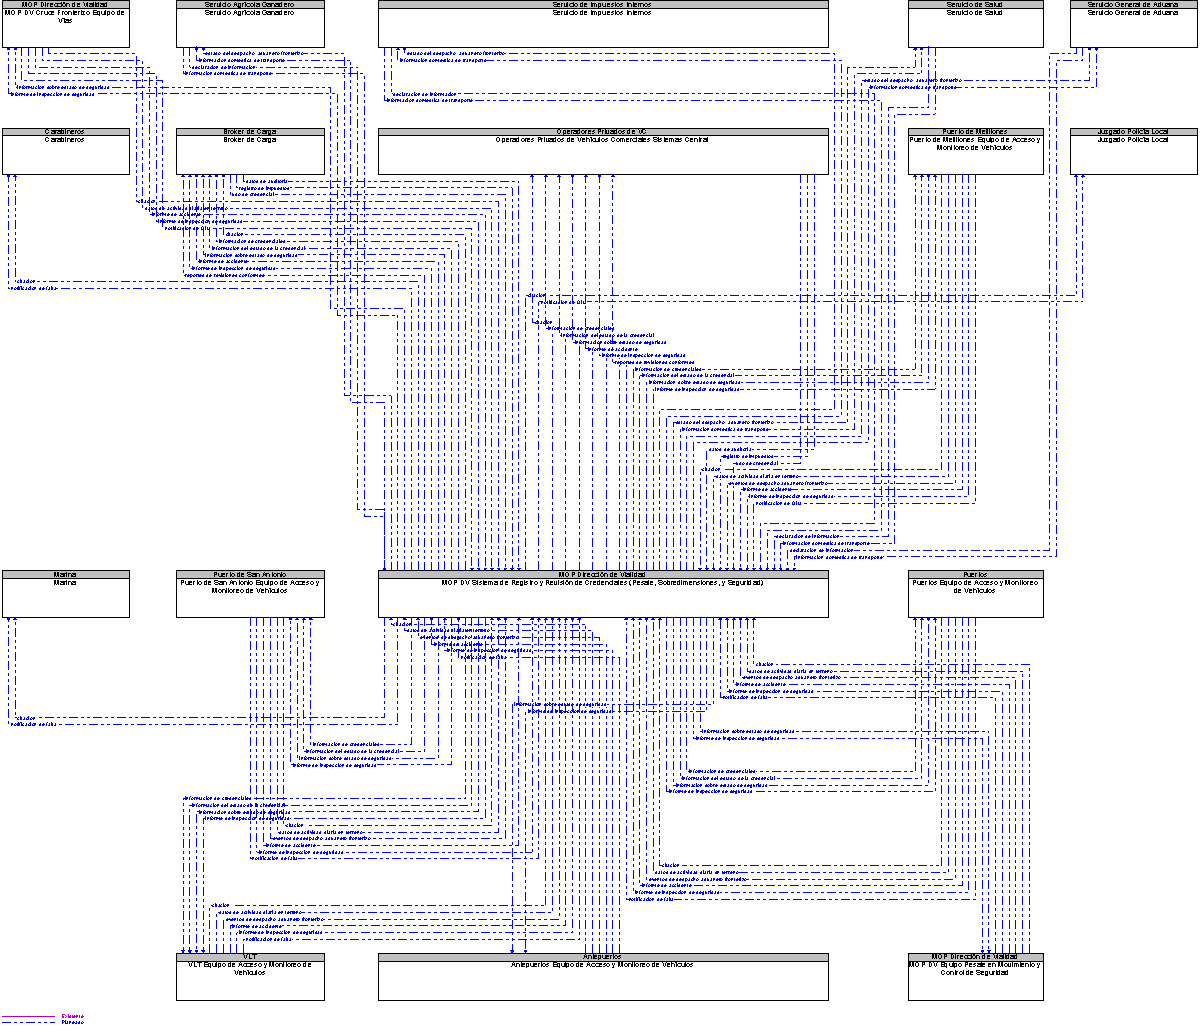 Diagrama Del Contexto por MOP DV Sistema de Registro y Revisin de Credenciales (Pesaje, Sobredimensiones, y Seguridad)